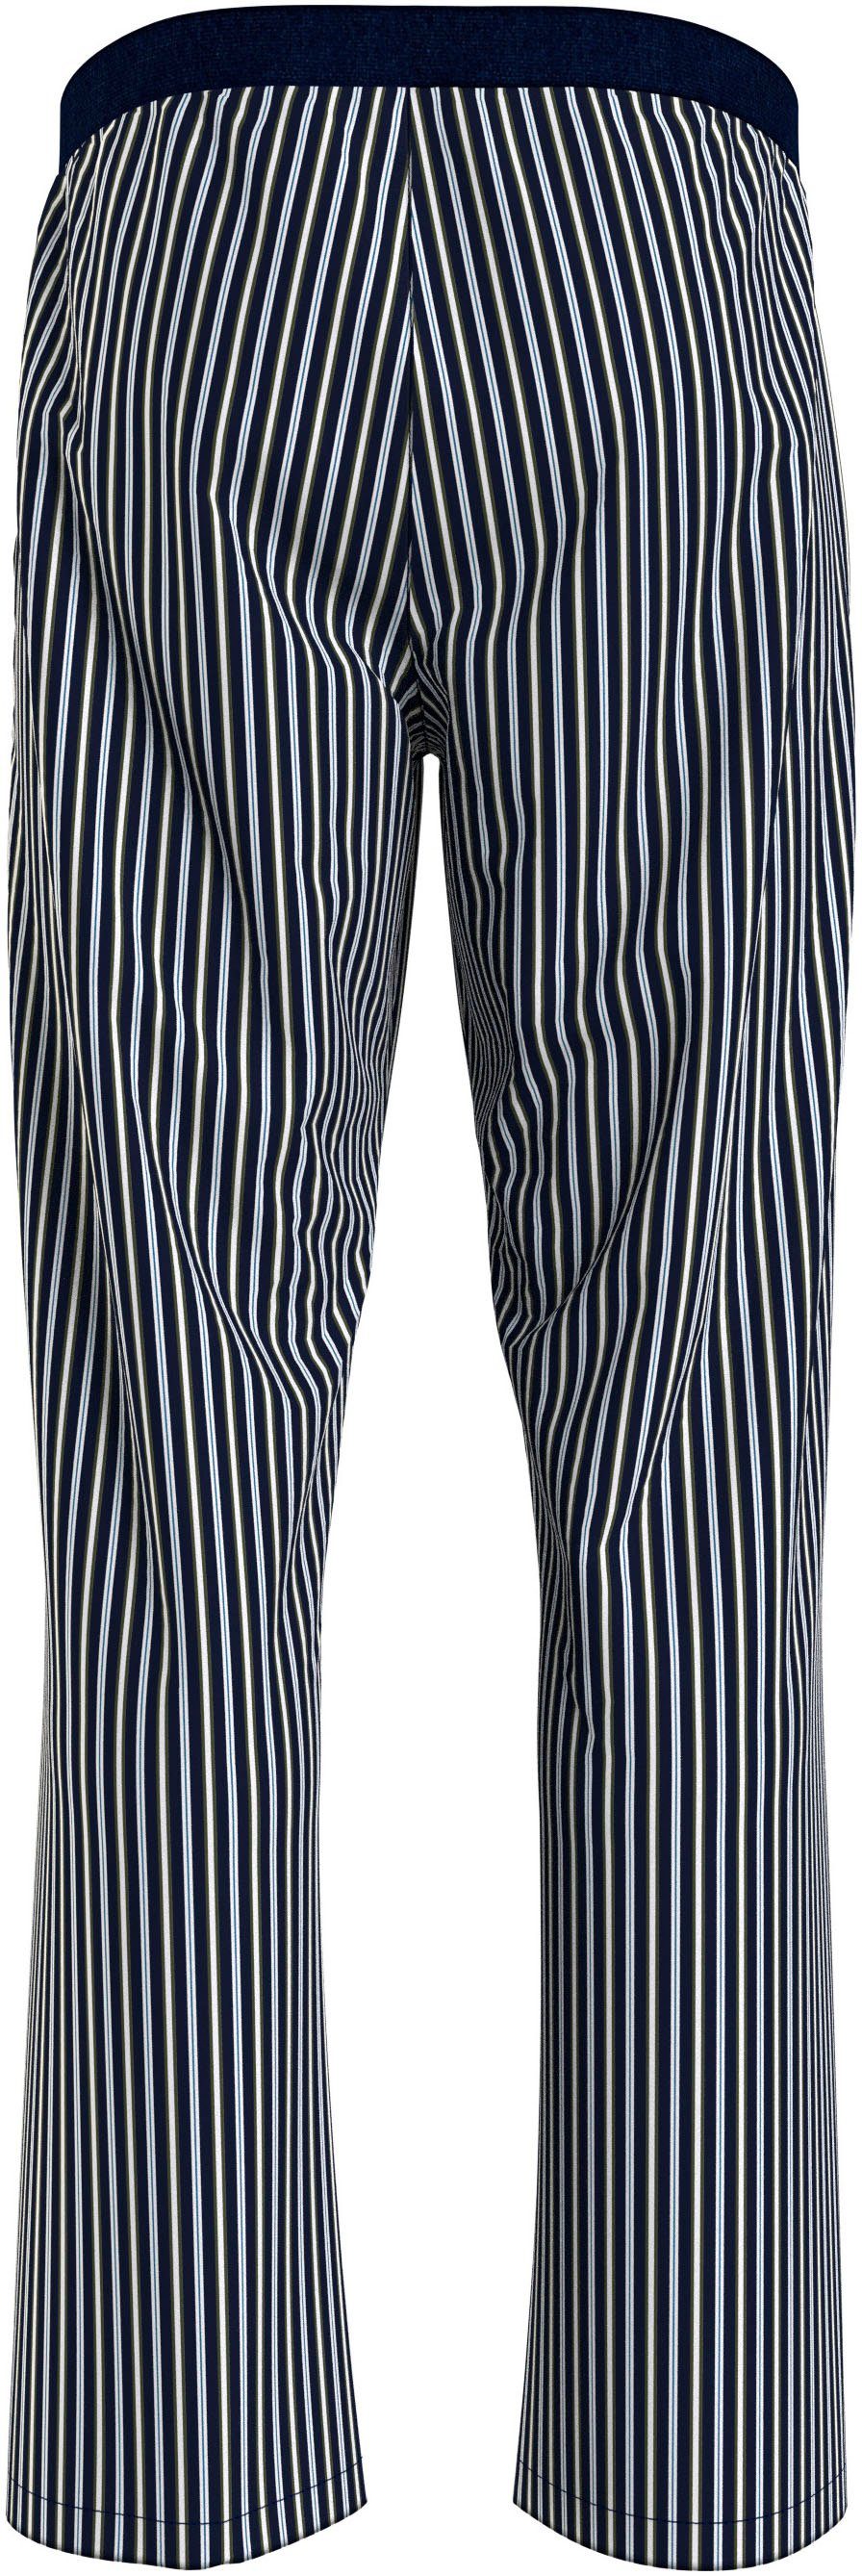 Tommy Hilfiger Underwear Pyjamahose WOVEN PANT PRINT mit Stretch-Taillenbund